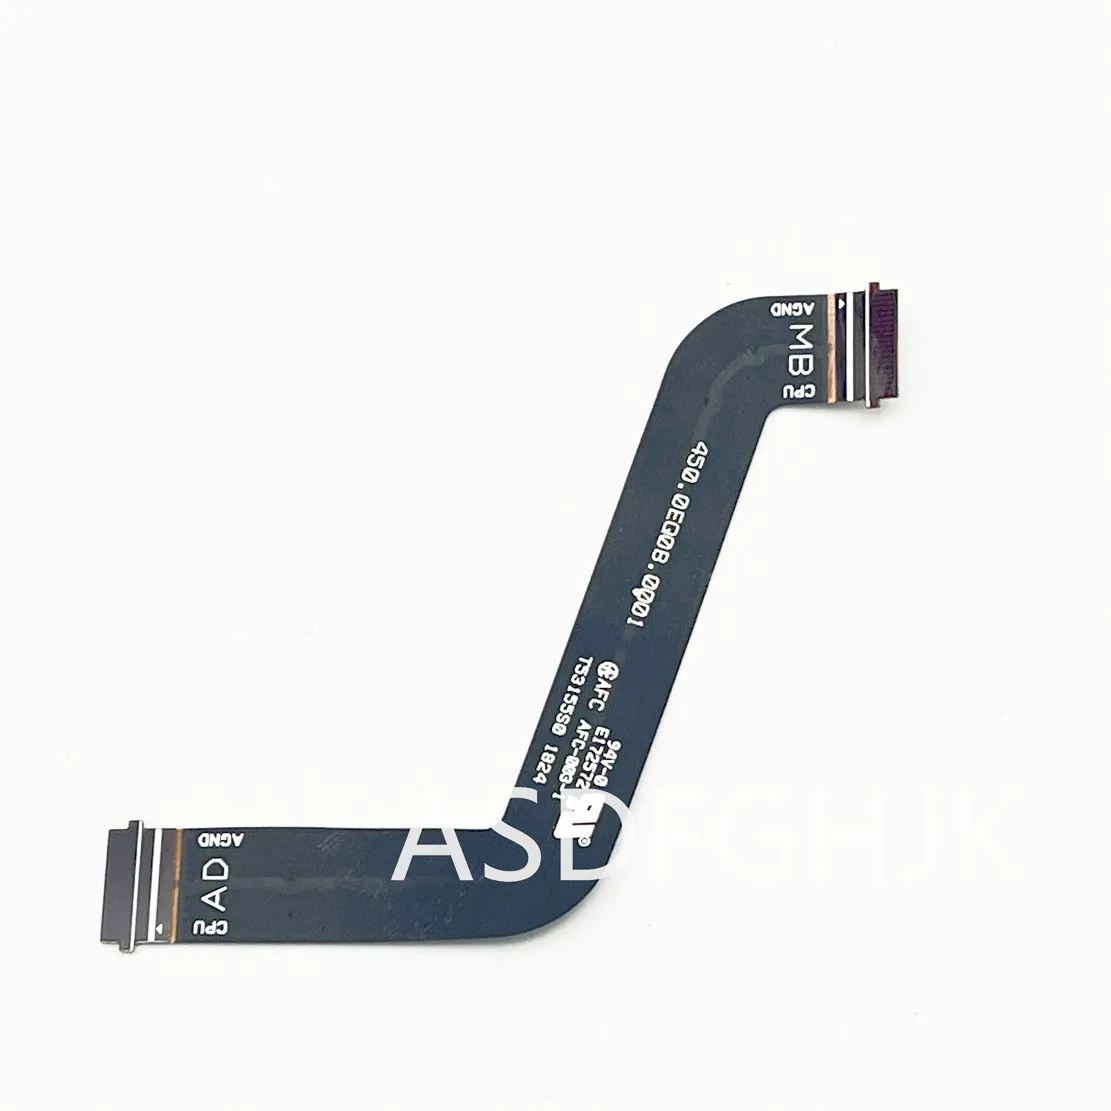 

Оригинальная USB аудиоплата для HP ProBook x360 440 G1 17B16-1 FFC cable 450.0EQ0B.0001 тест, хорошая бесплатная доставка